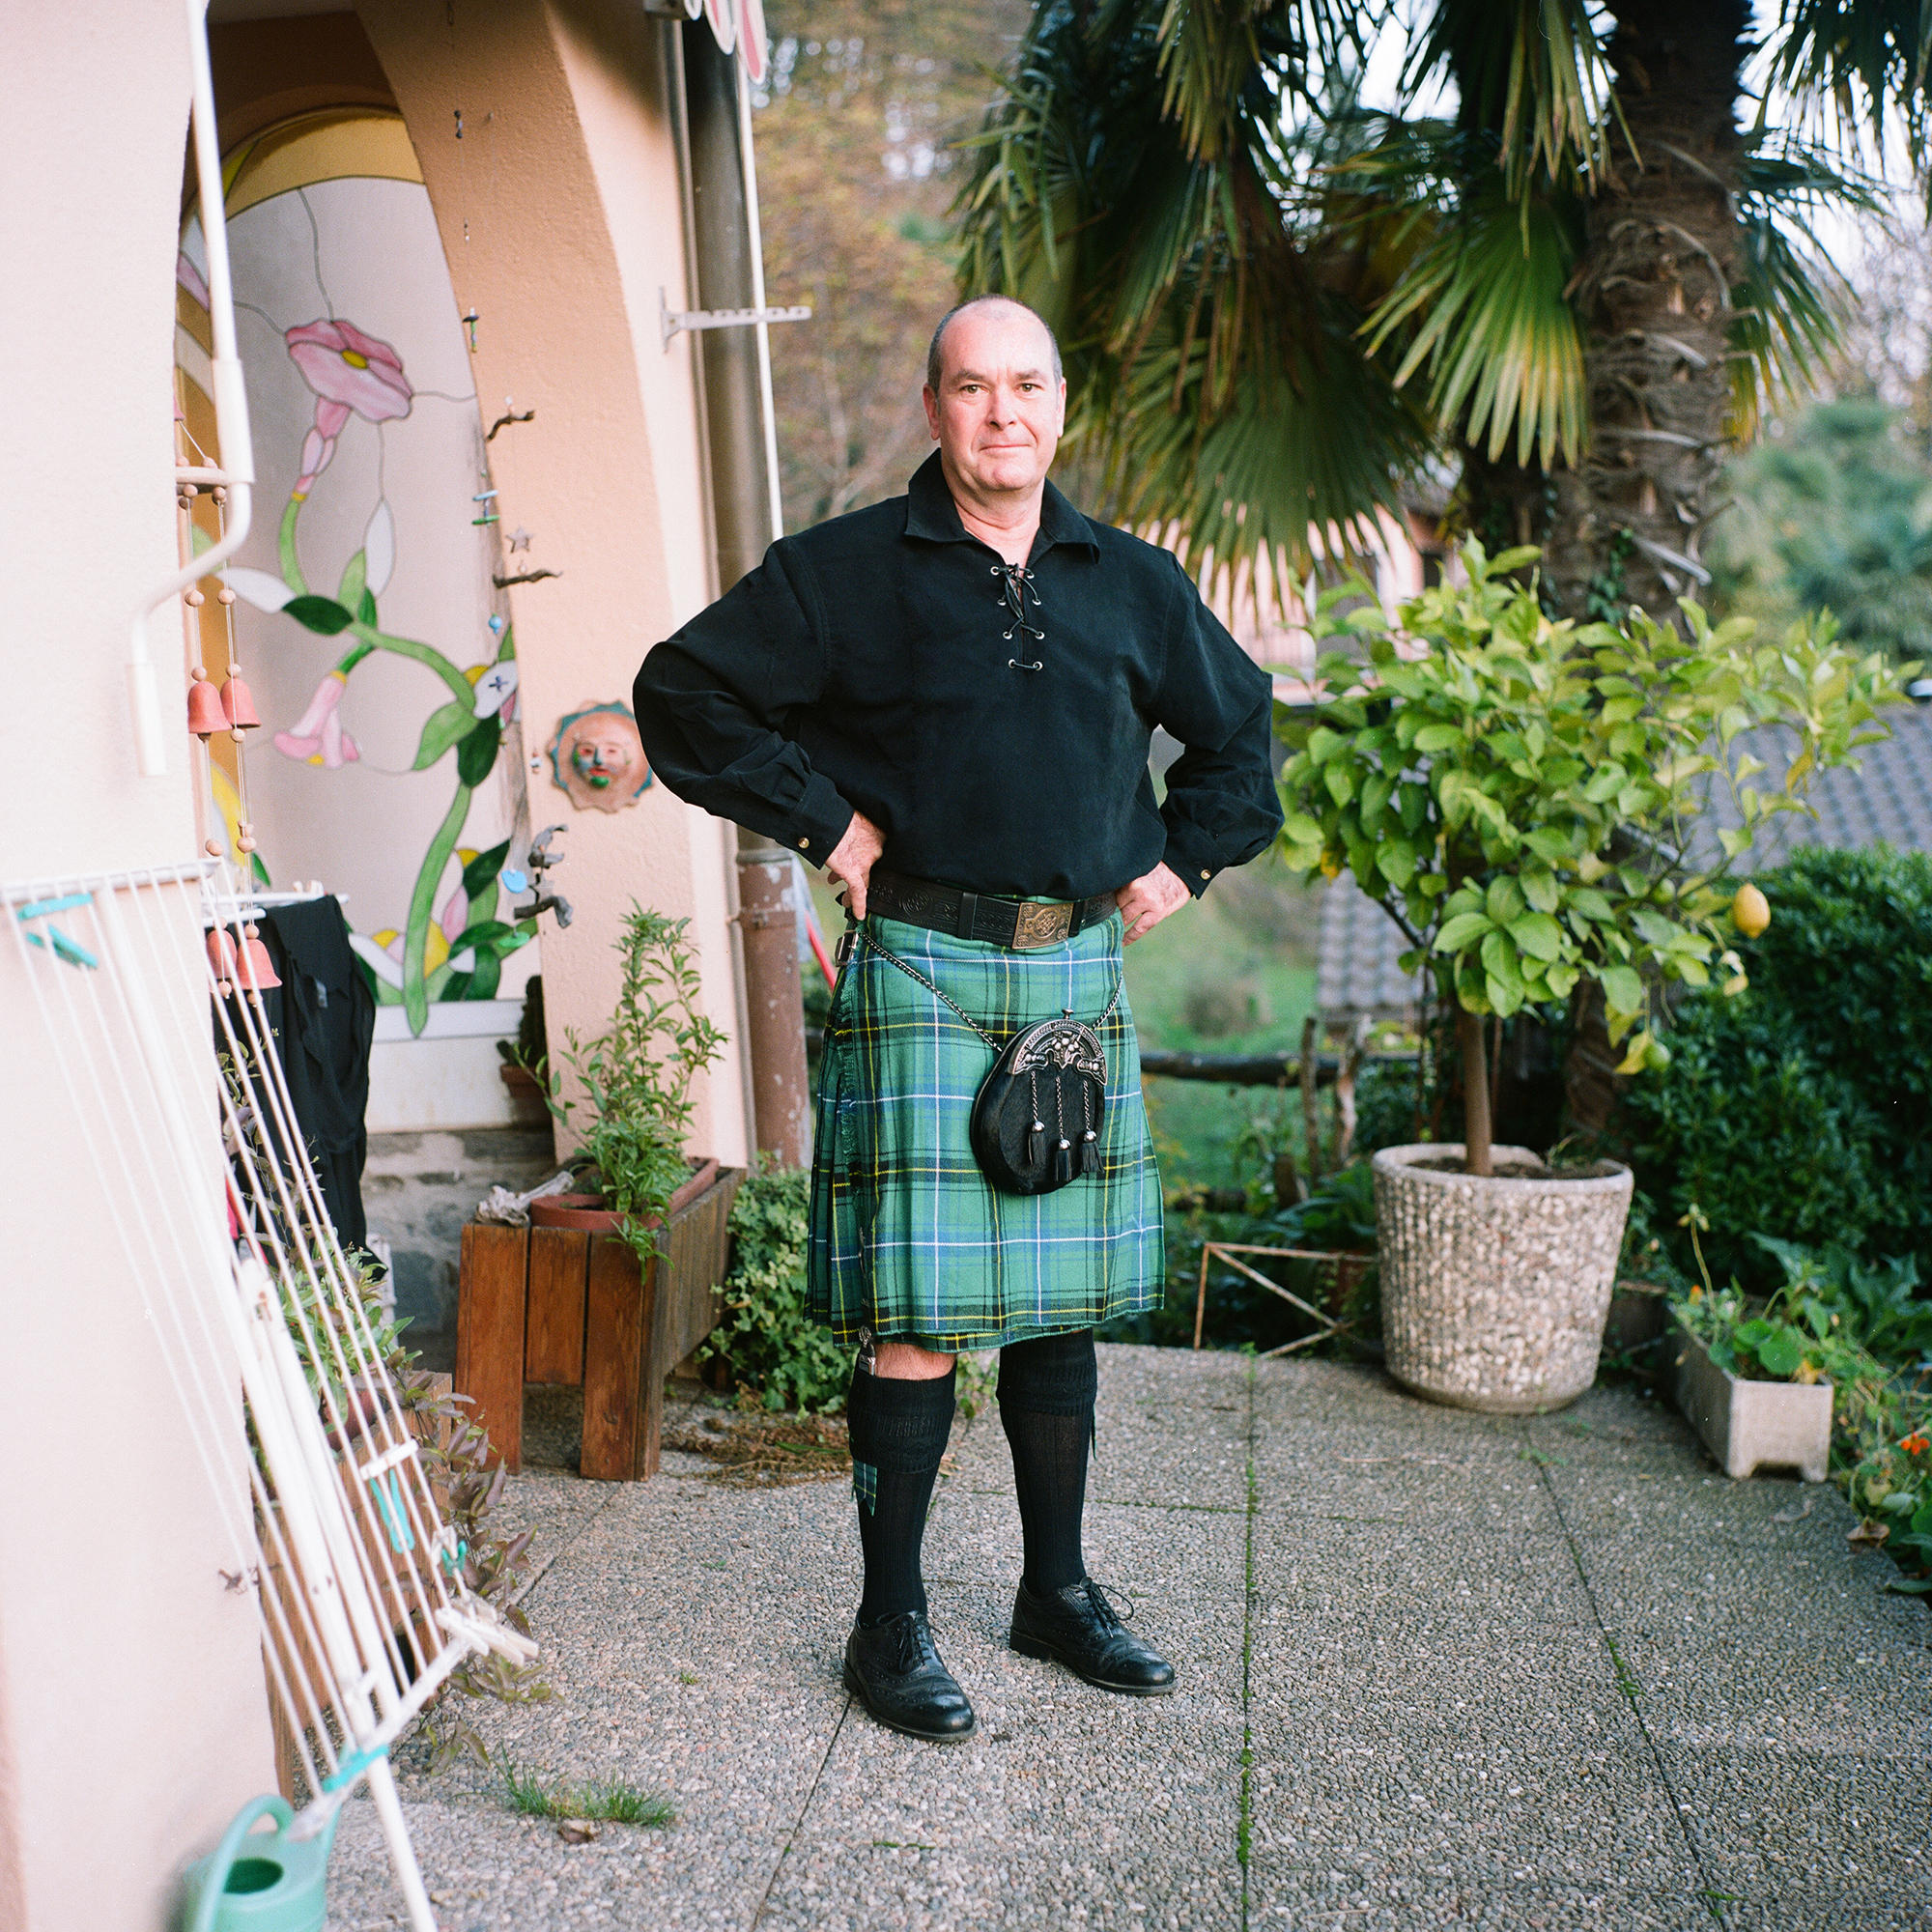 Hombre con vestimenta típica de Escocia: con falda verde a cuadros